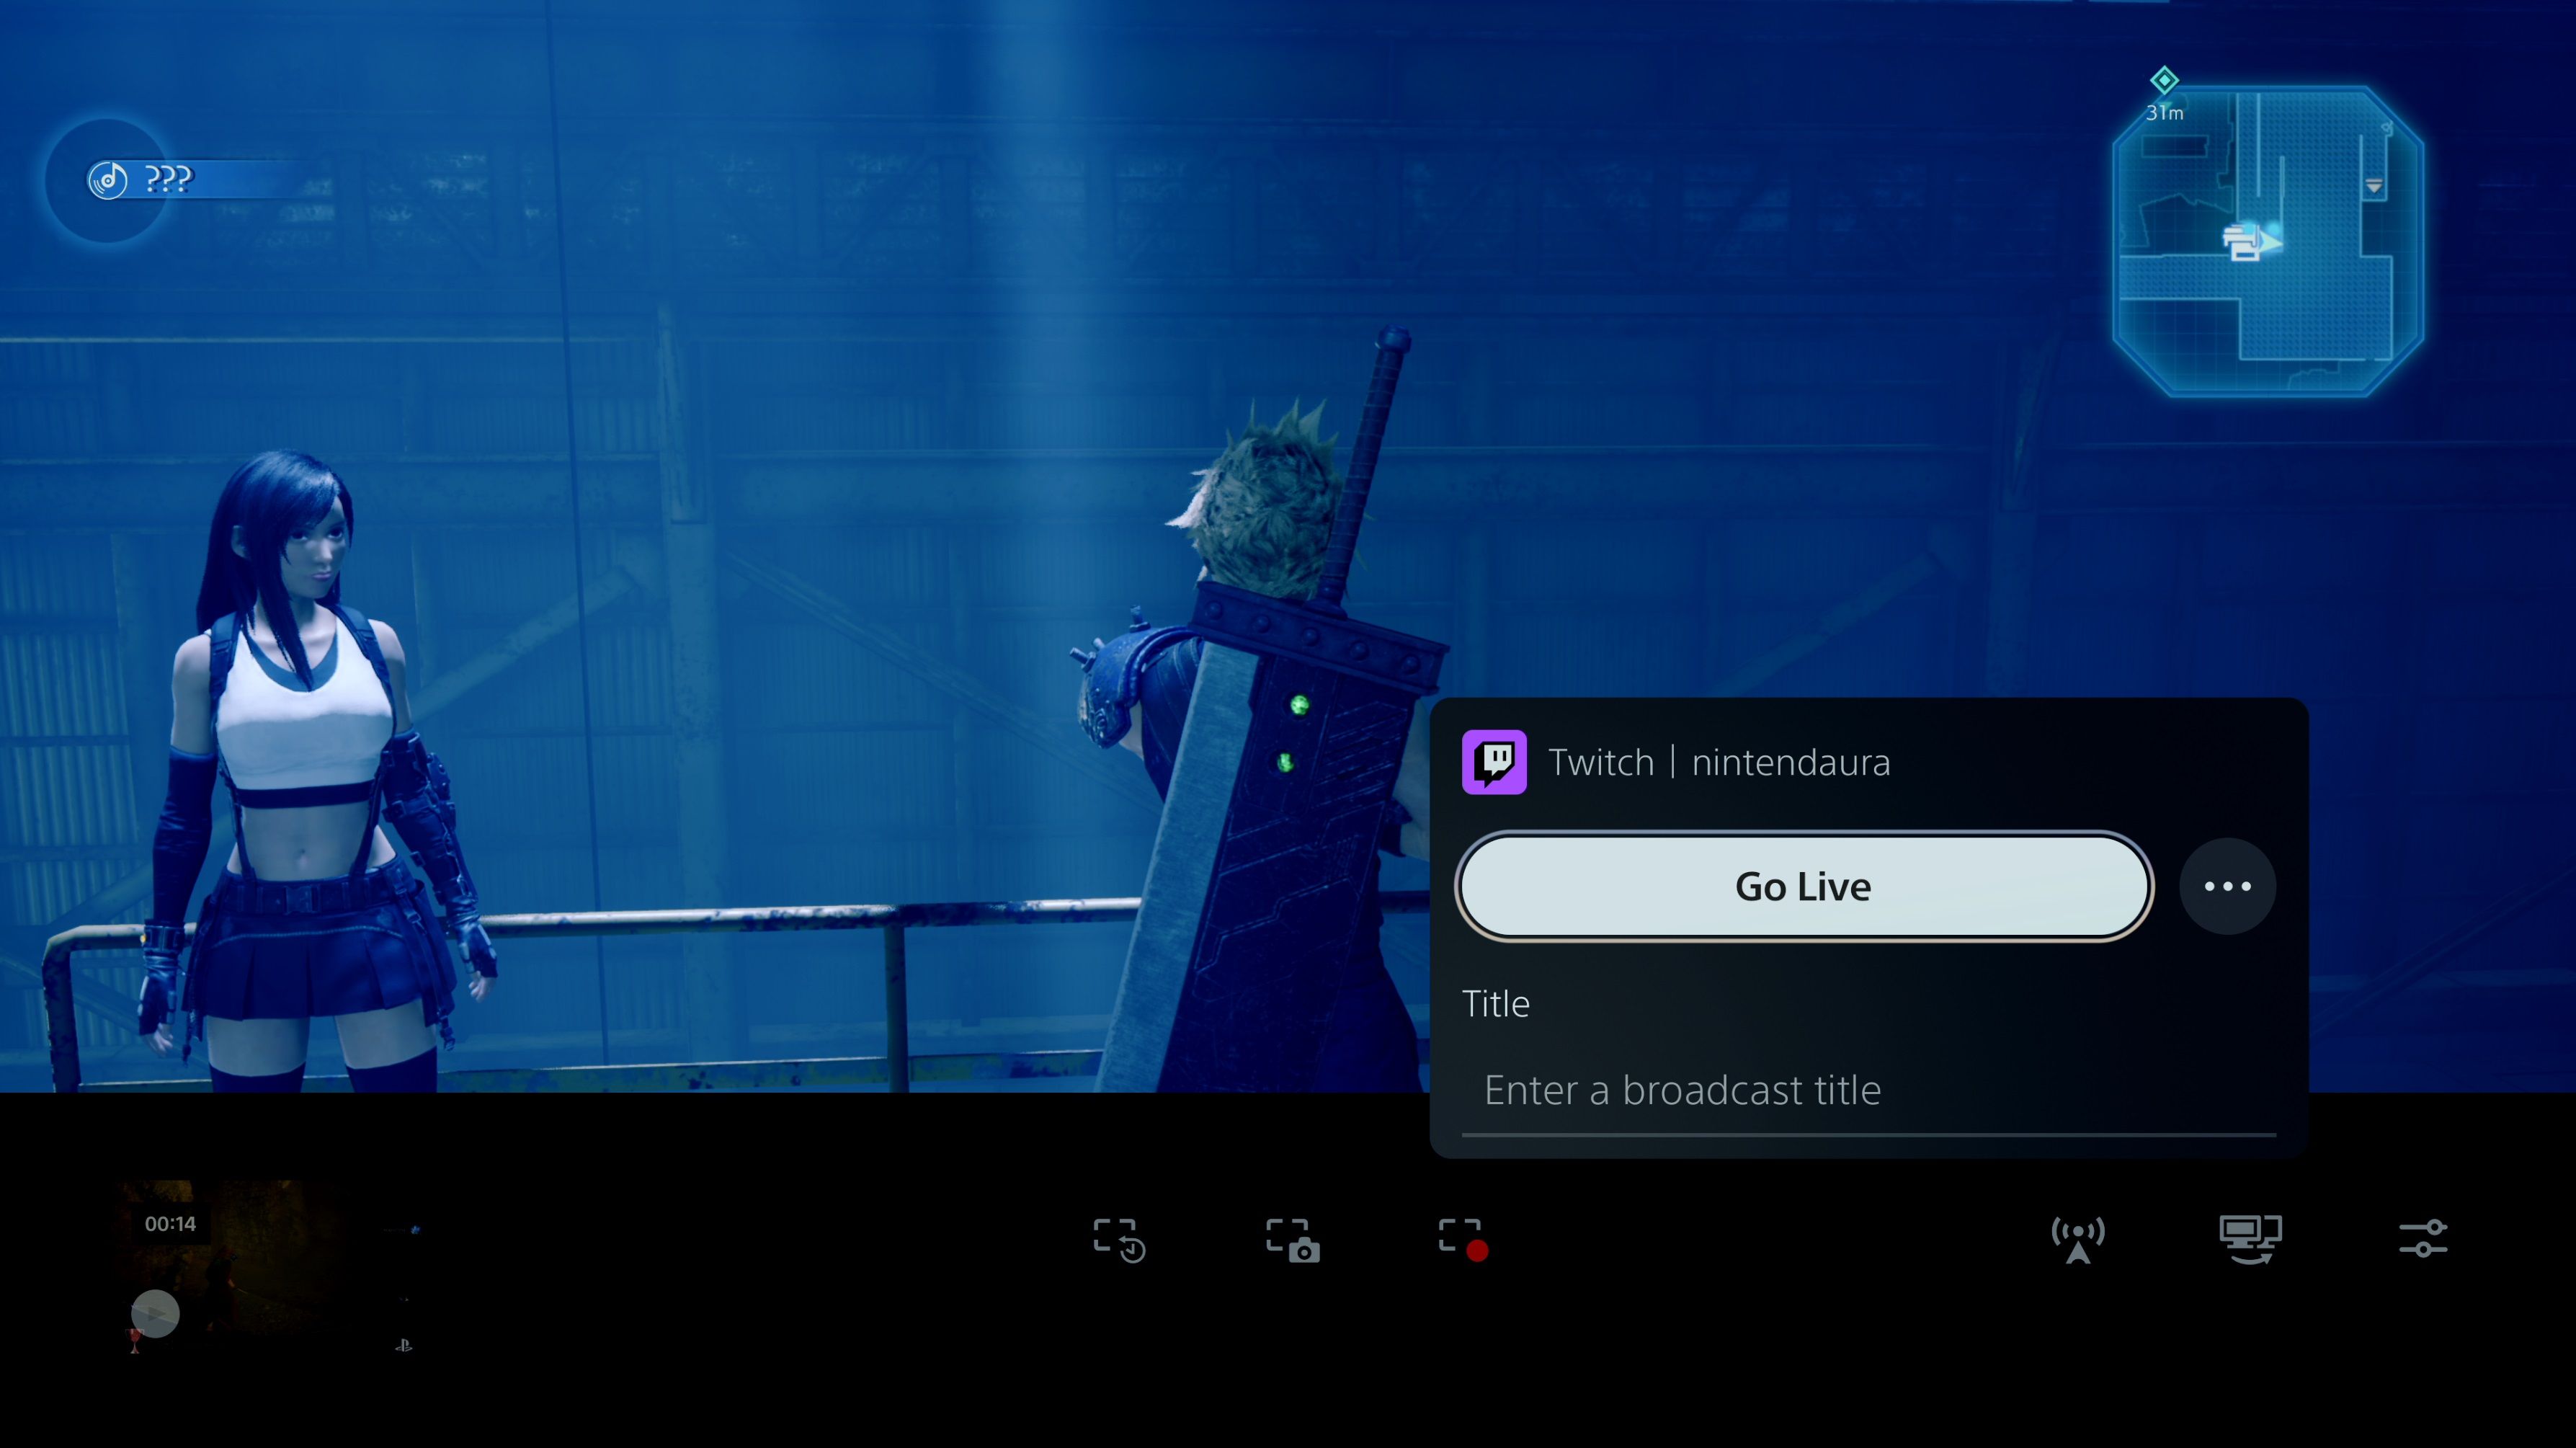 Selecione Go Live no recurso de transmissão no PS5